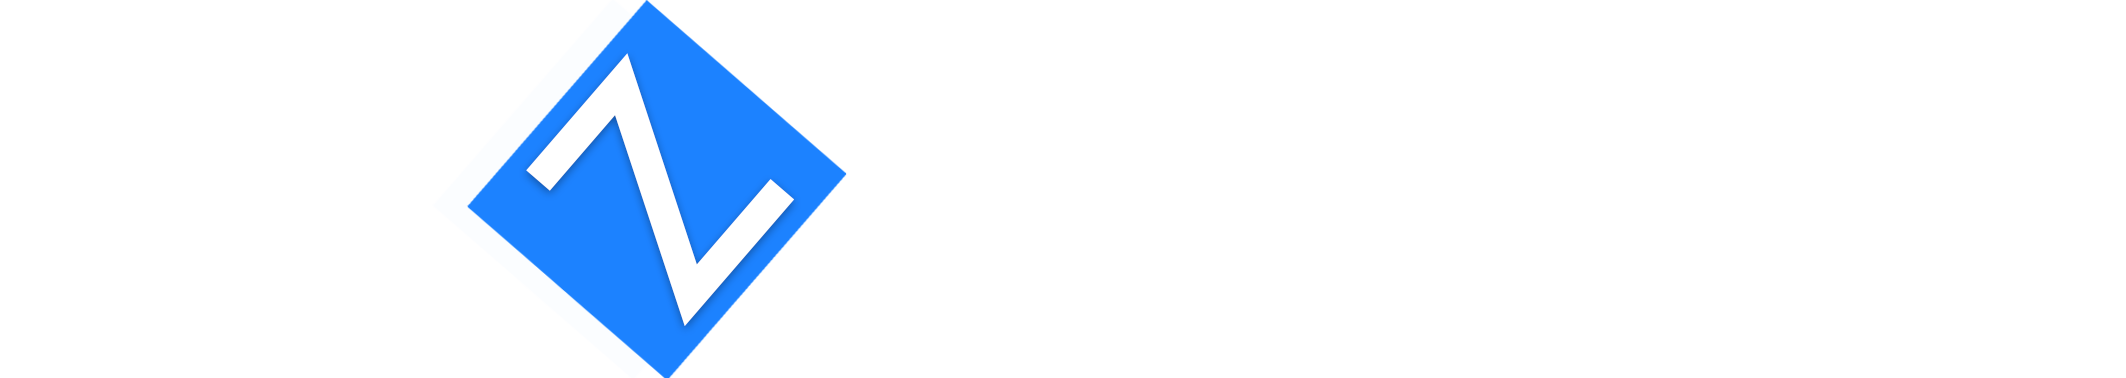 logo zduna+